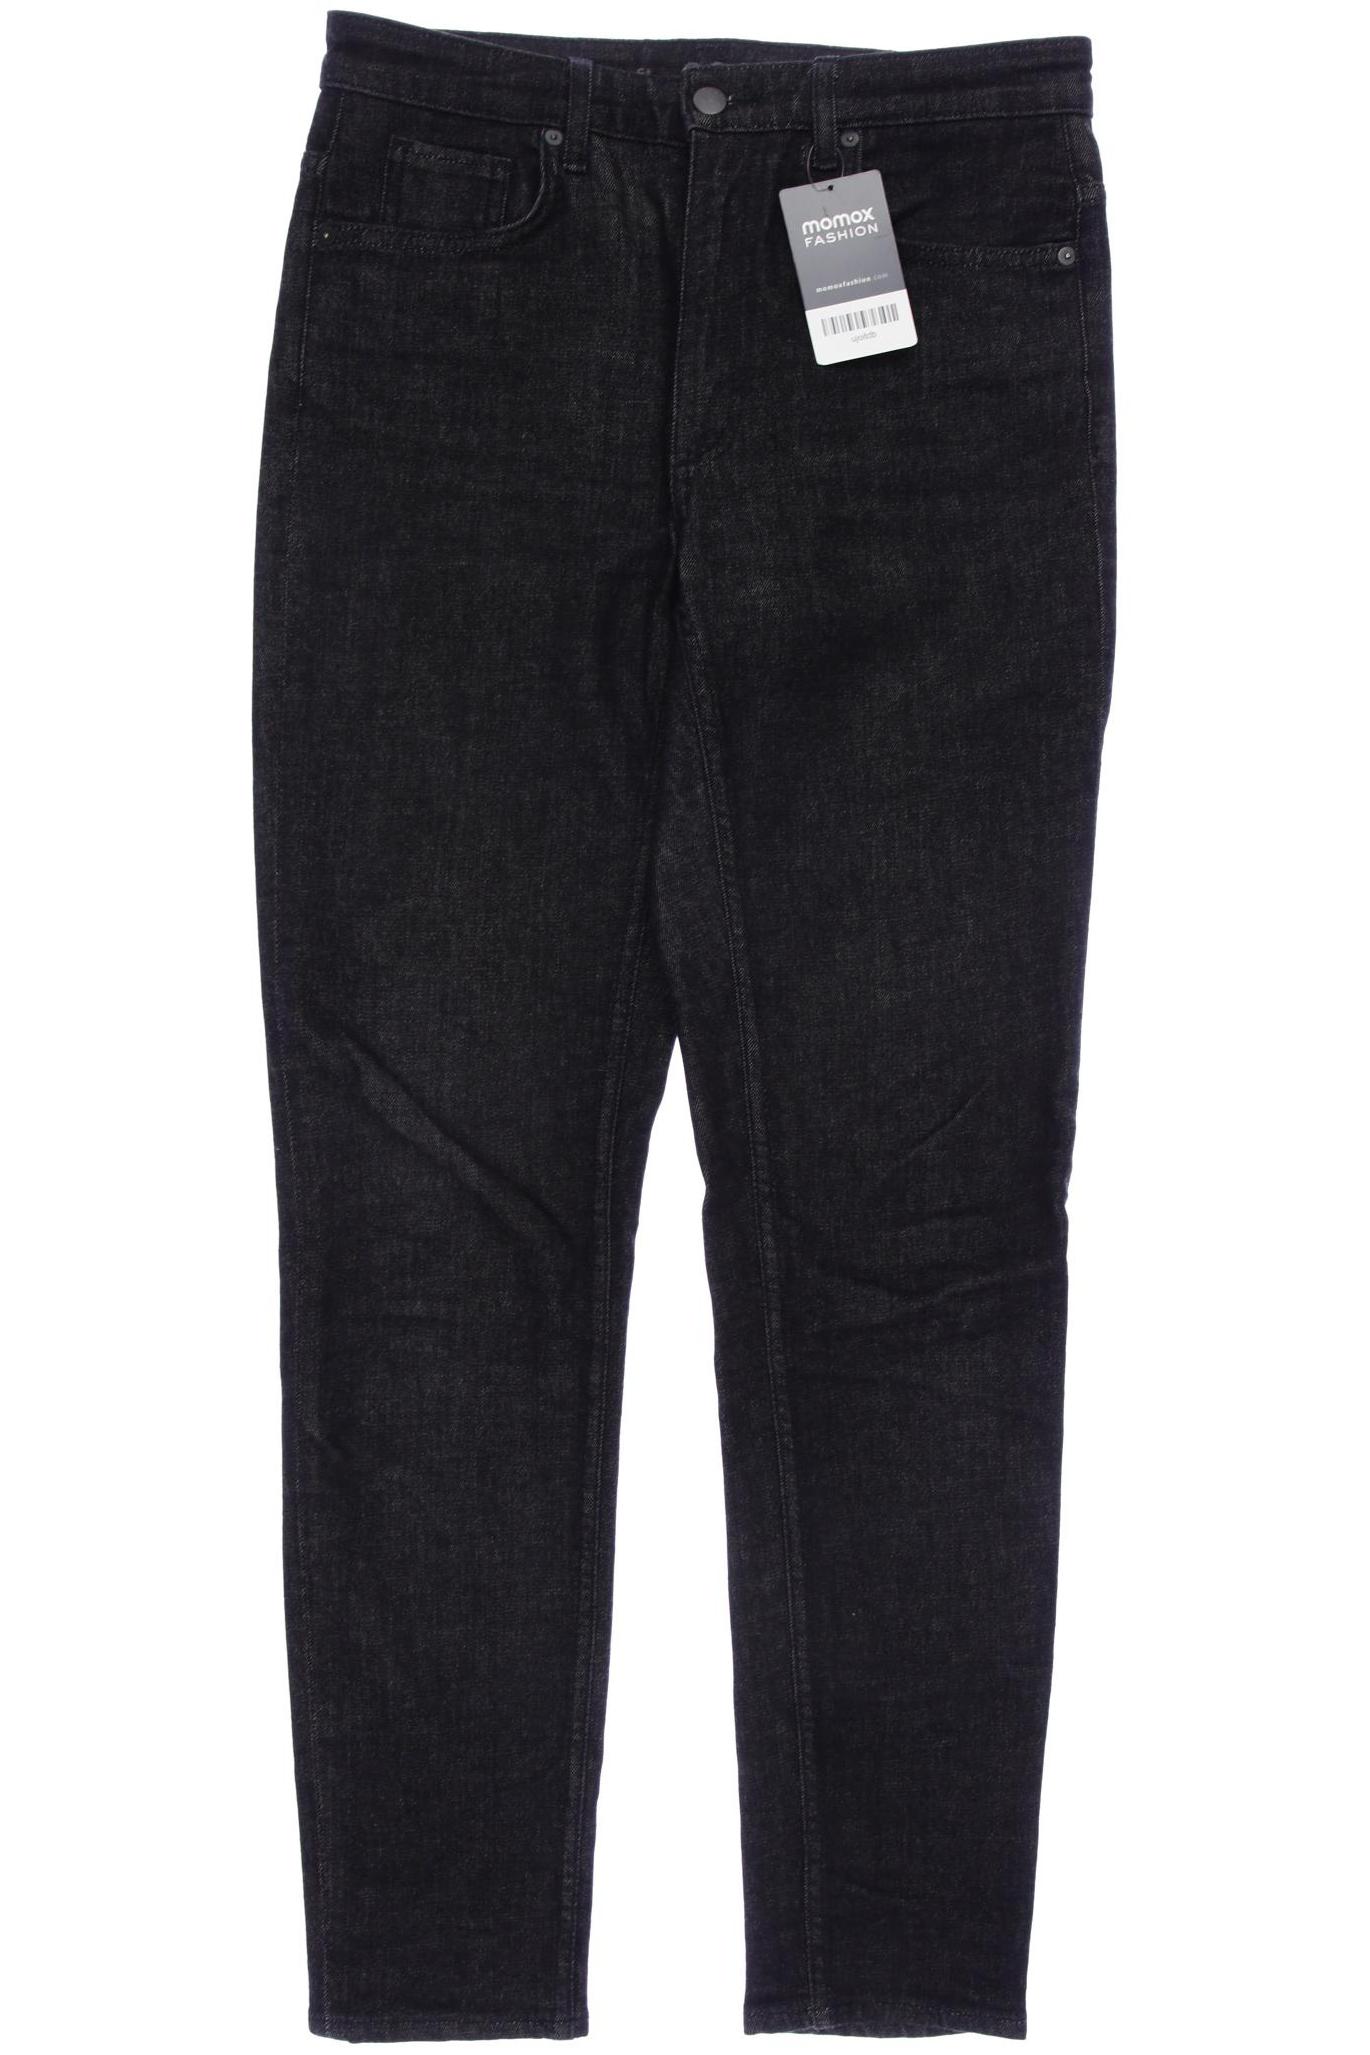 COS Damen Jeans, schwarz, Gr. 40 von COS